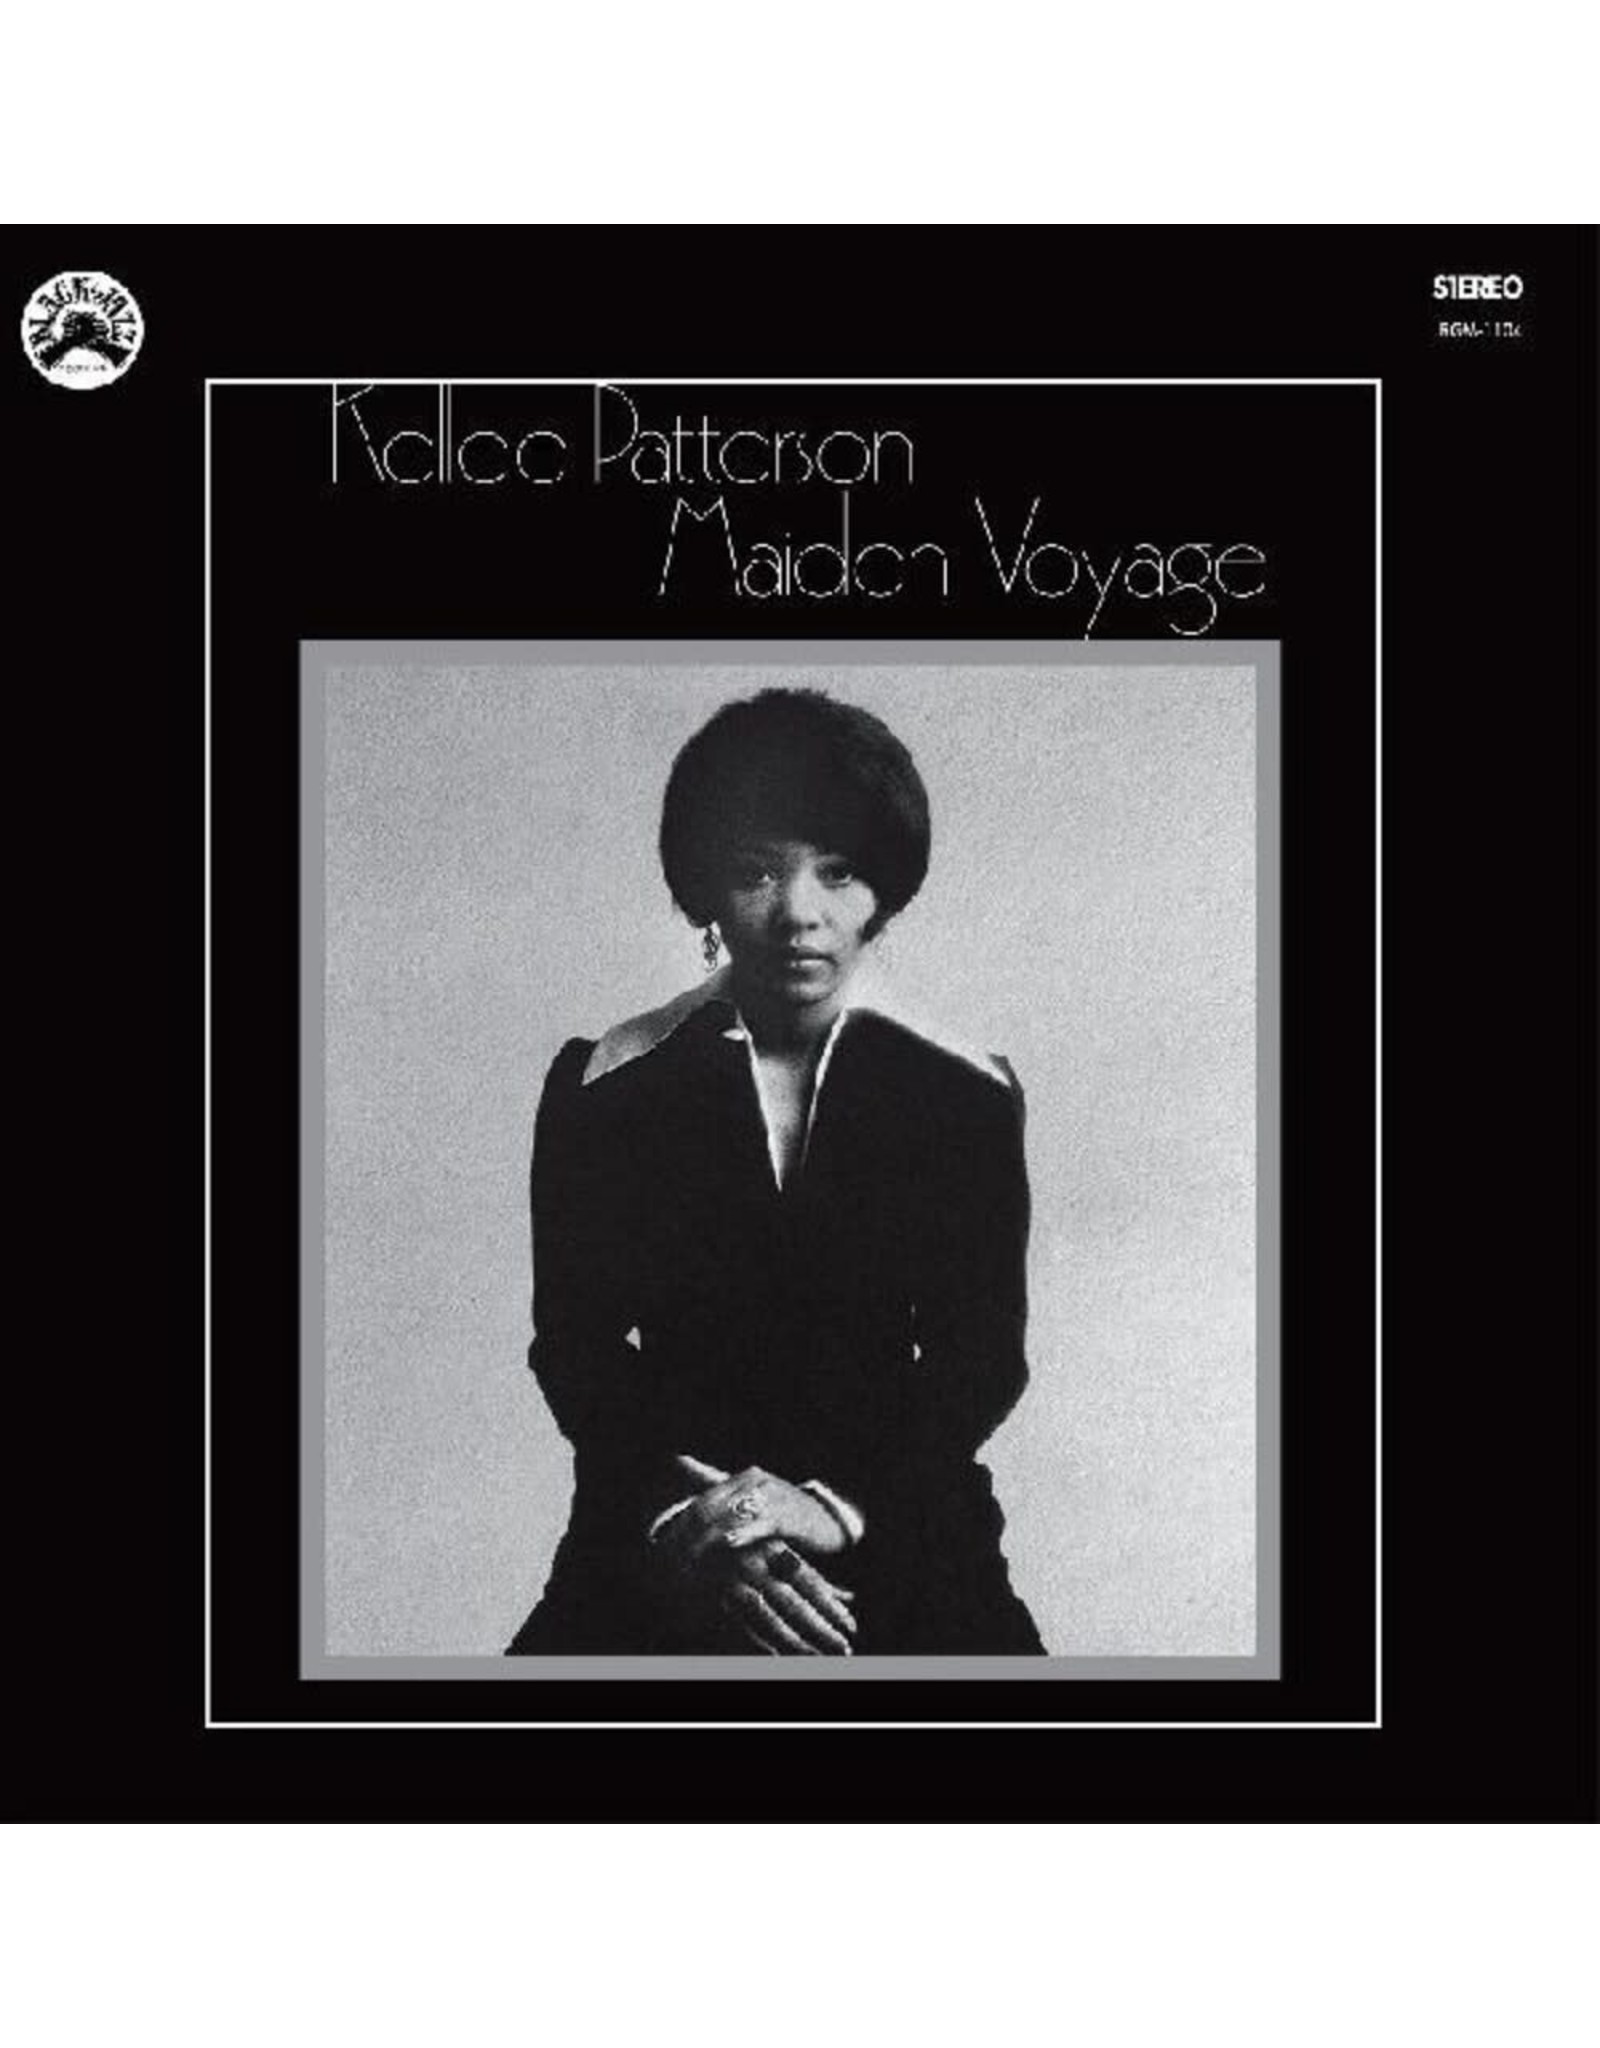 Patterson, Kellee - Maiden Voyage LP